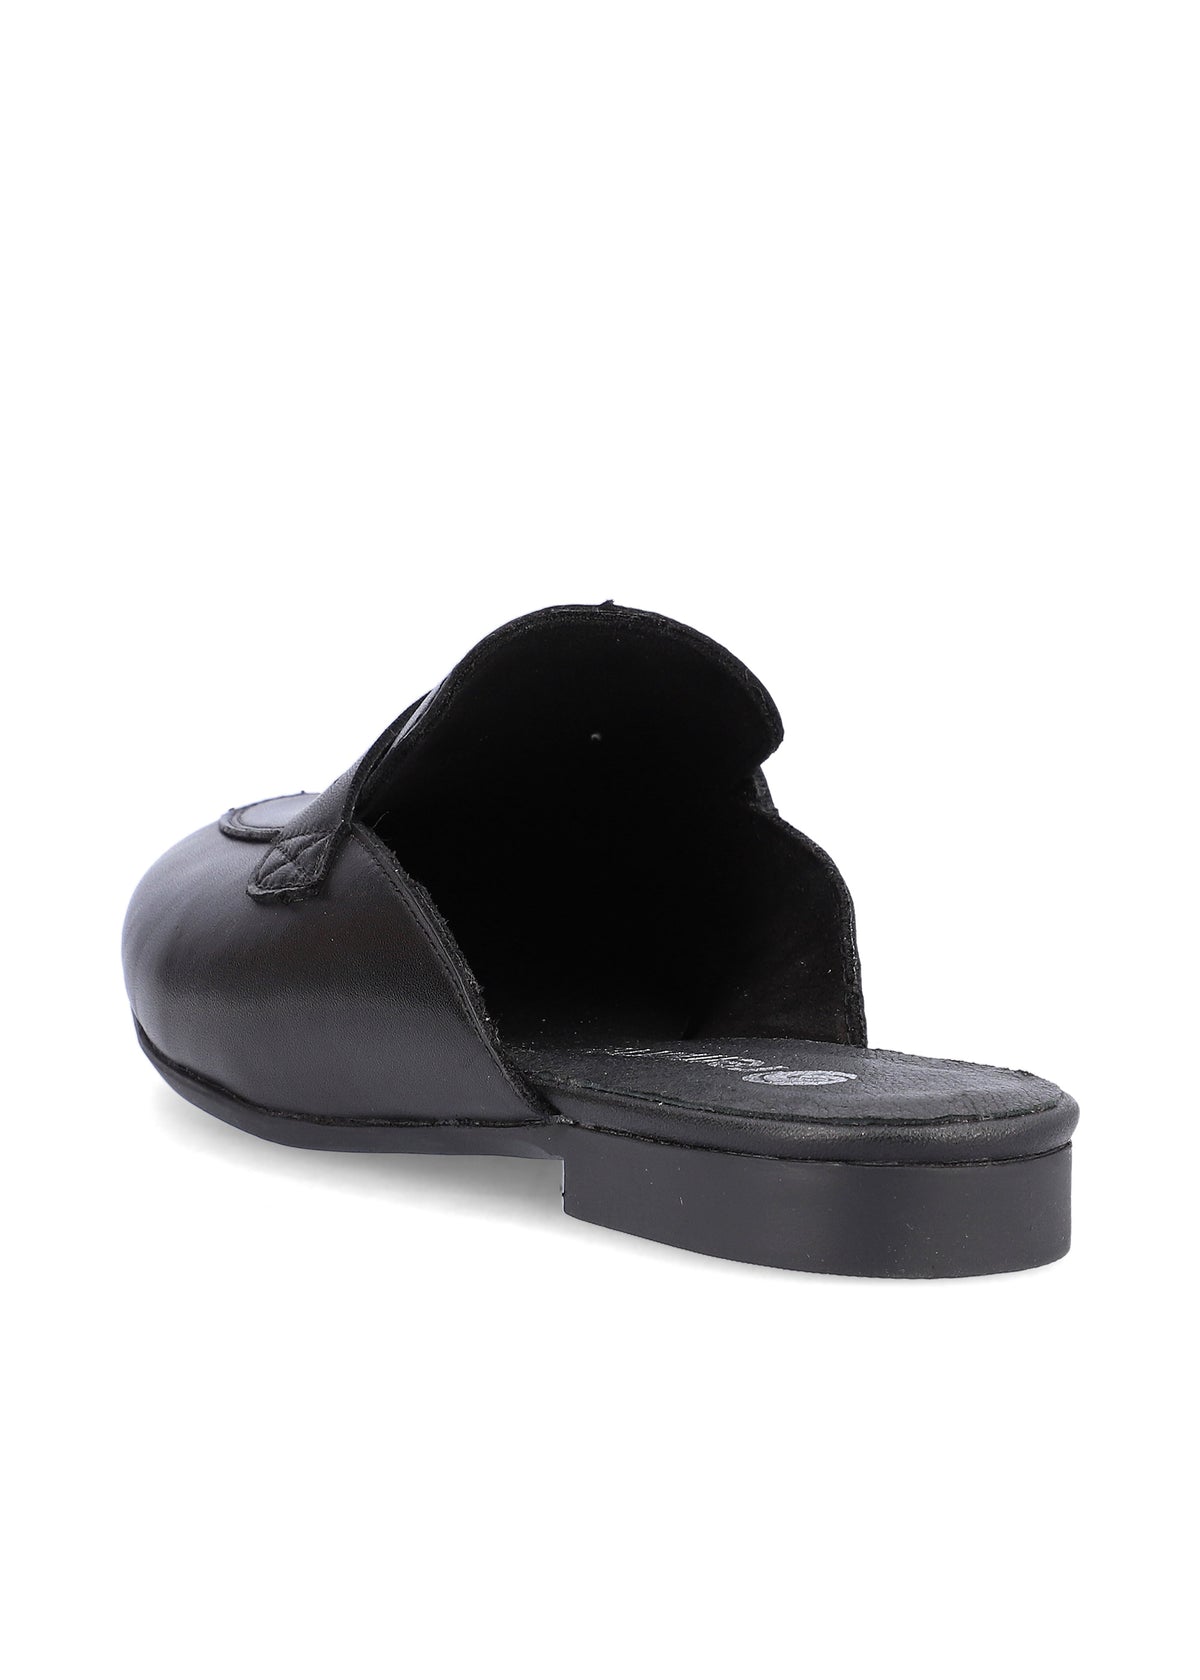 Pistokassandaalit - musta, loafer